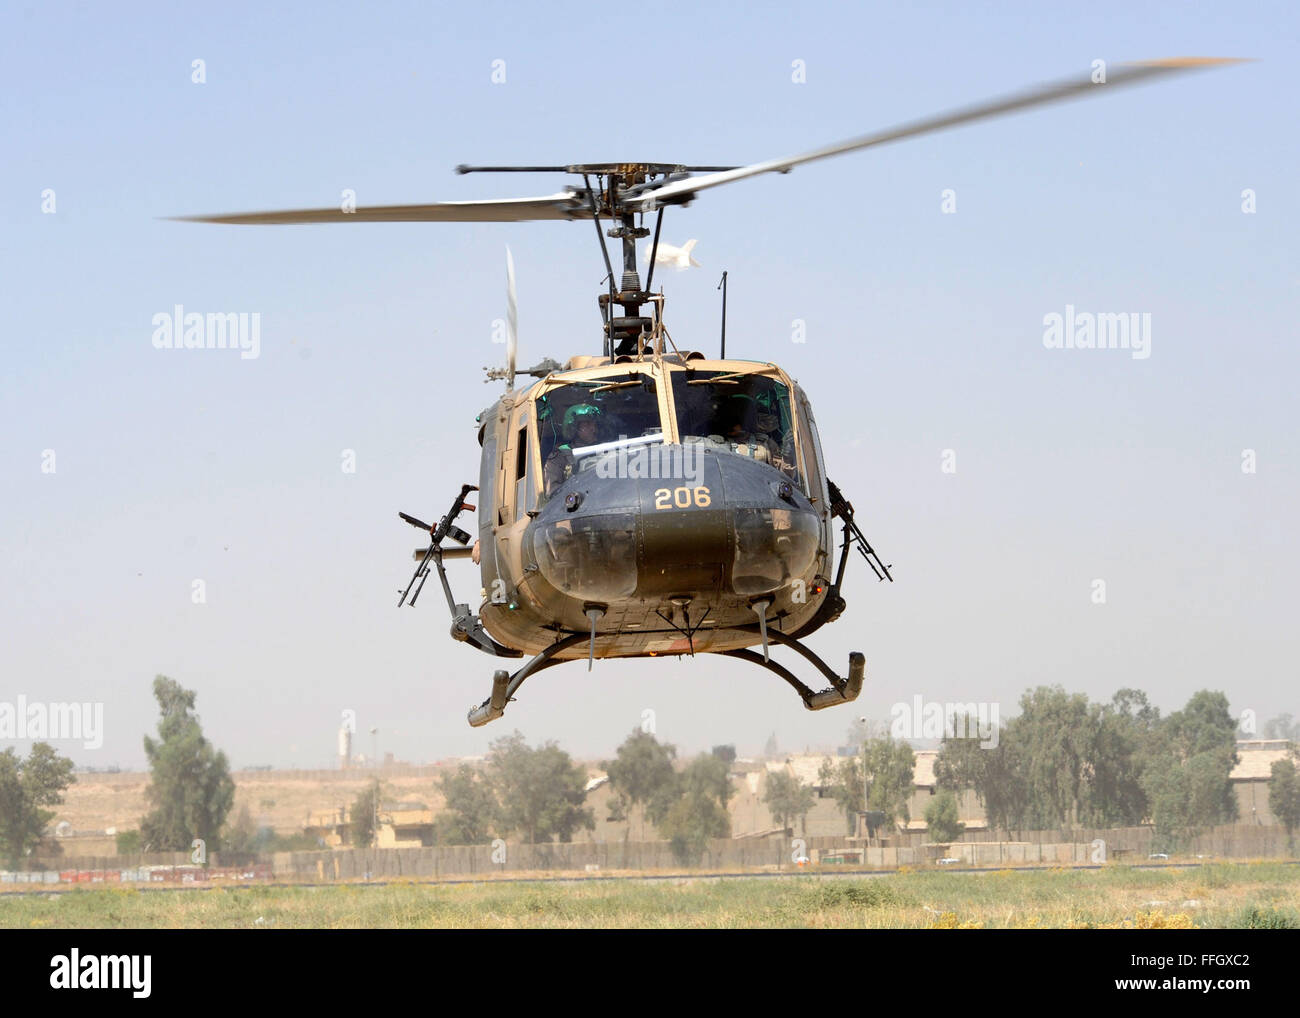 Eine irakische Luftwaffe sichert UH - 1 H Weg, wie es sich taxis vor dem Start auf eine gemeinsame Mission über den Irak, auf Forward Operating Base Diamondback in Mosul, Irak. Stockfoto